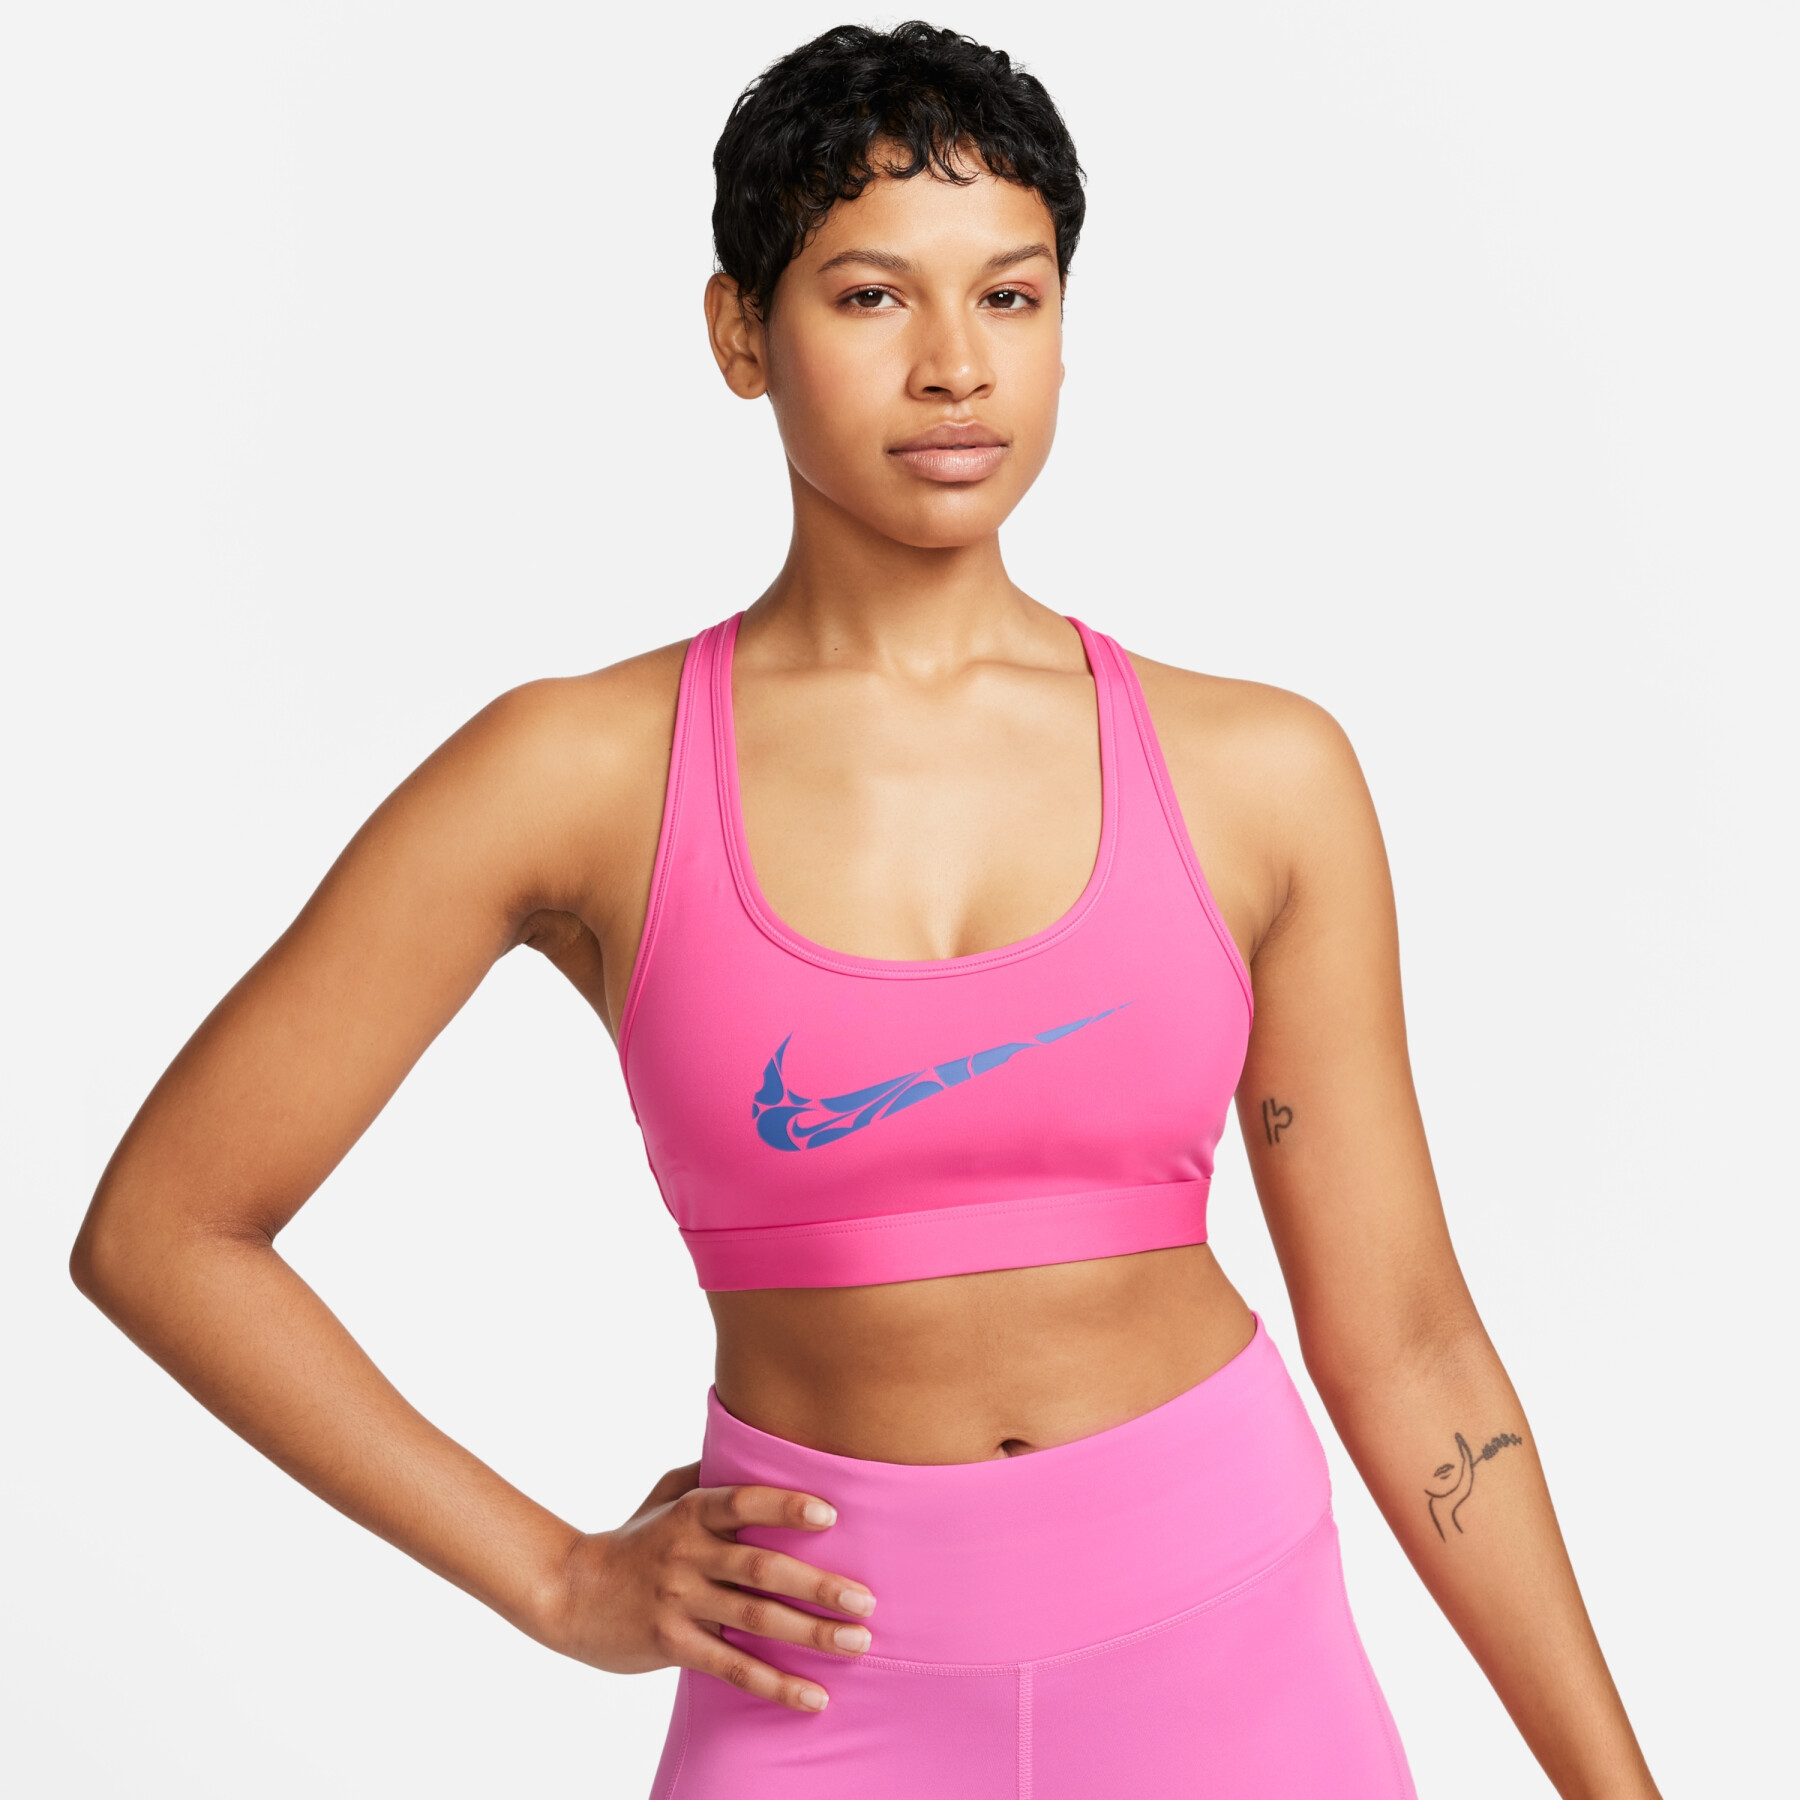 Women's unpadded bra Nike Swoosh